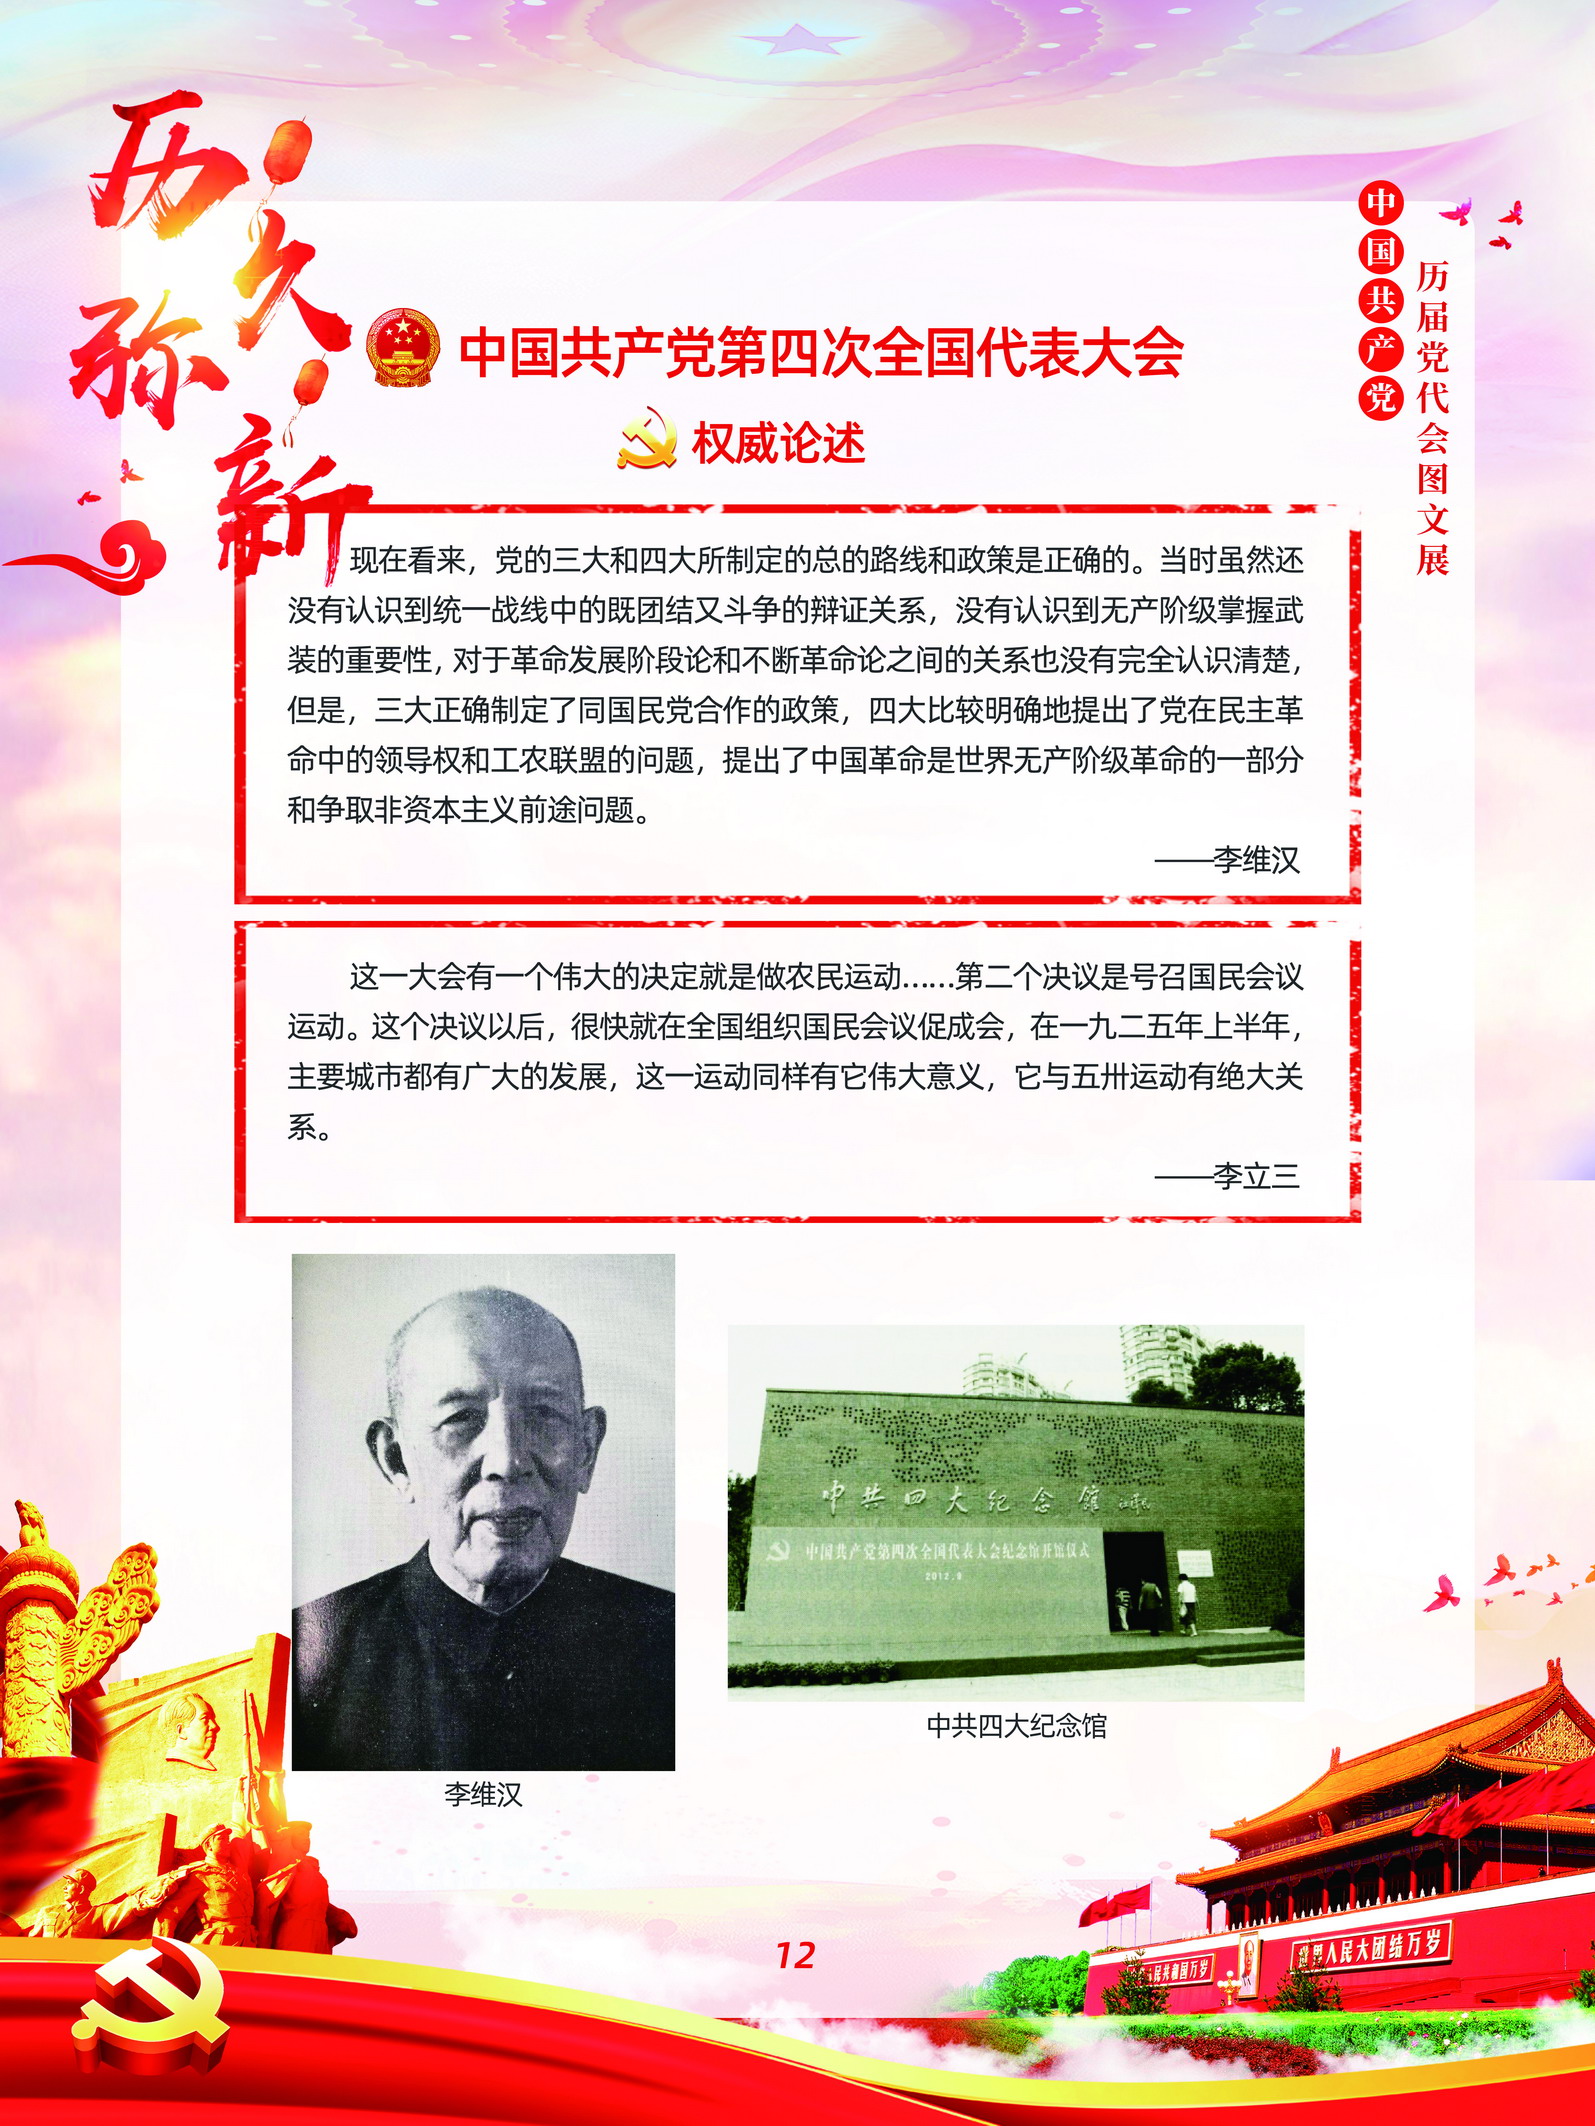 中国共产党历届党代会图文展_图11